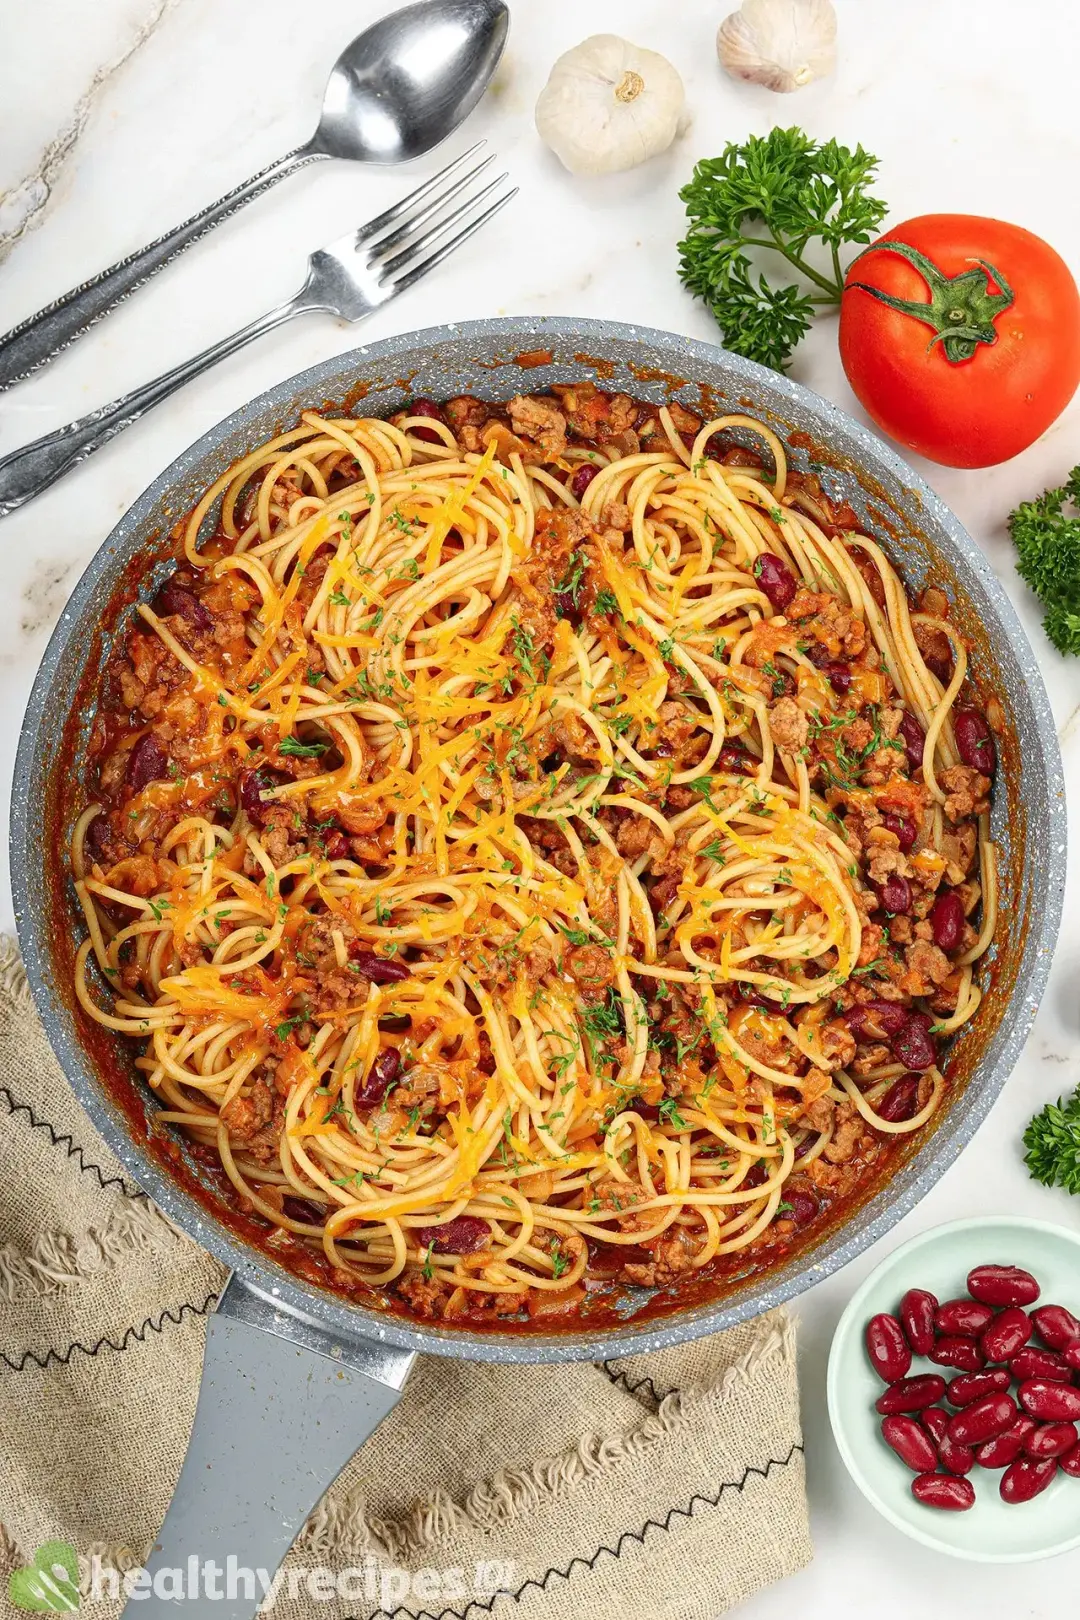 Chili Spaghetti Recipe